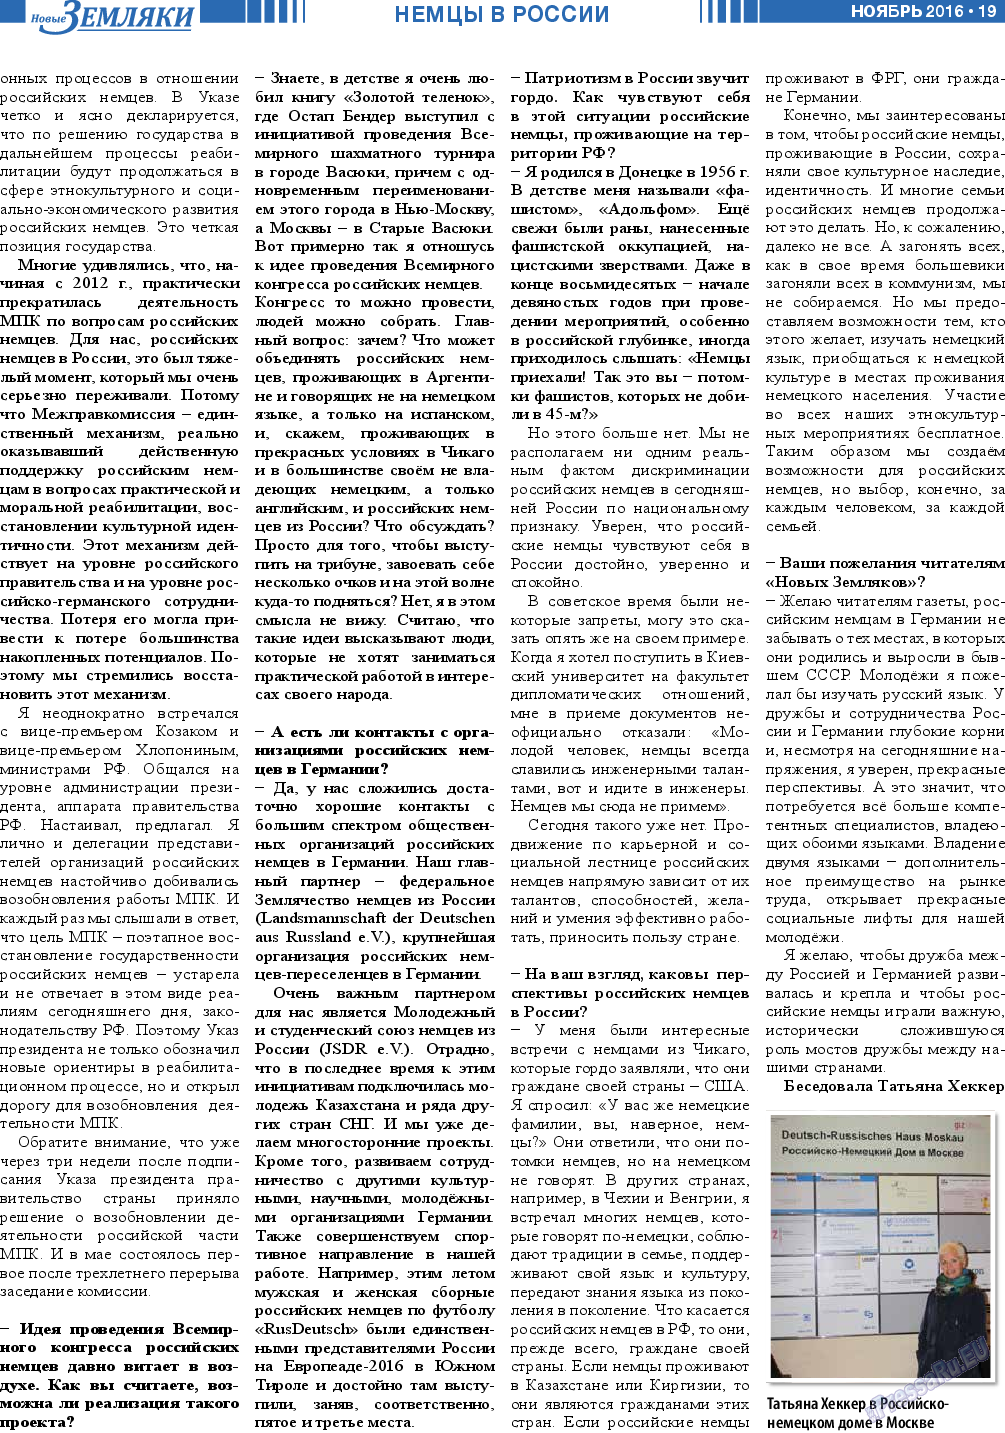 Новые Земляки, газета. 2016 №11 стр.19